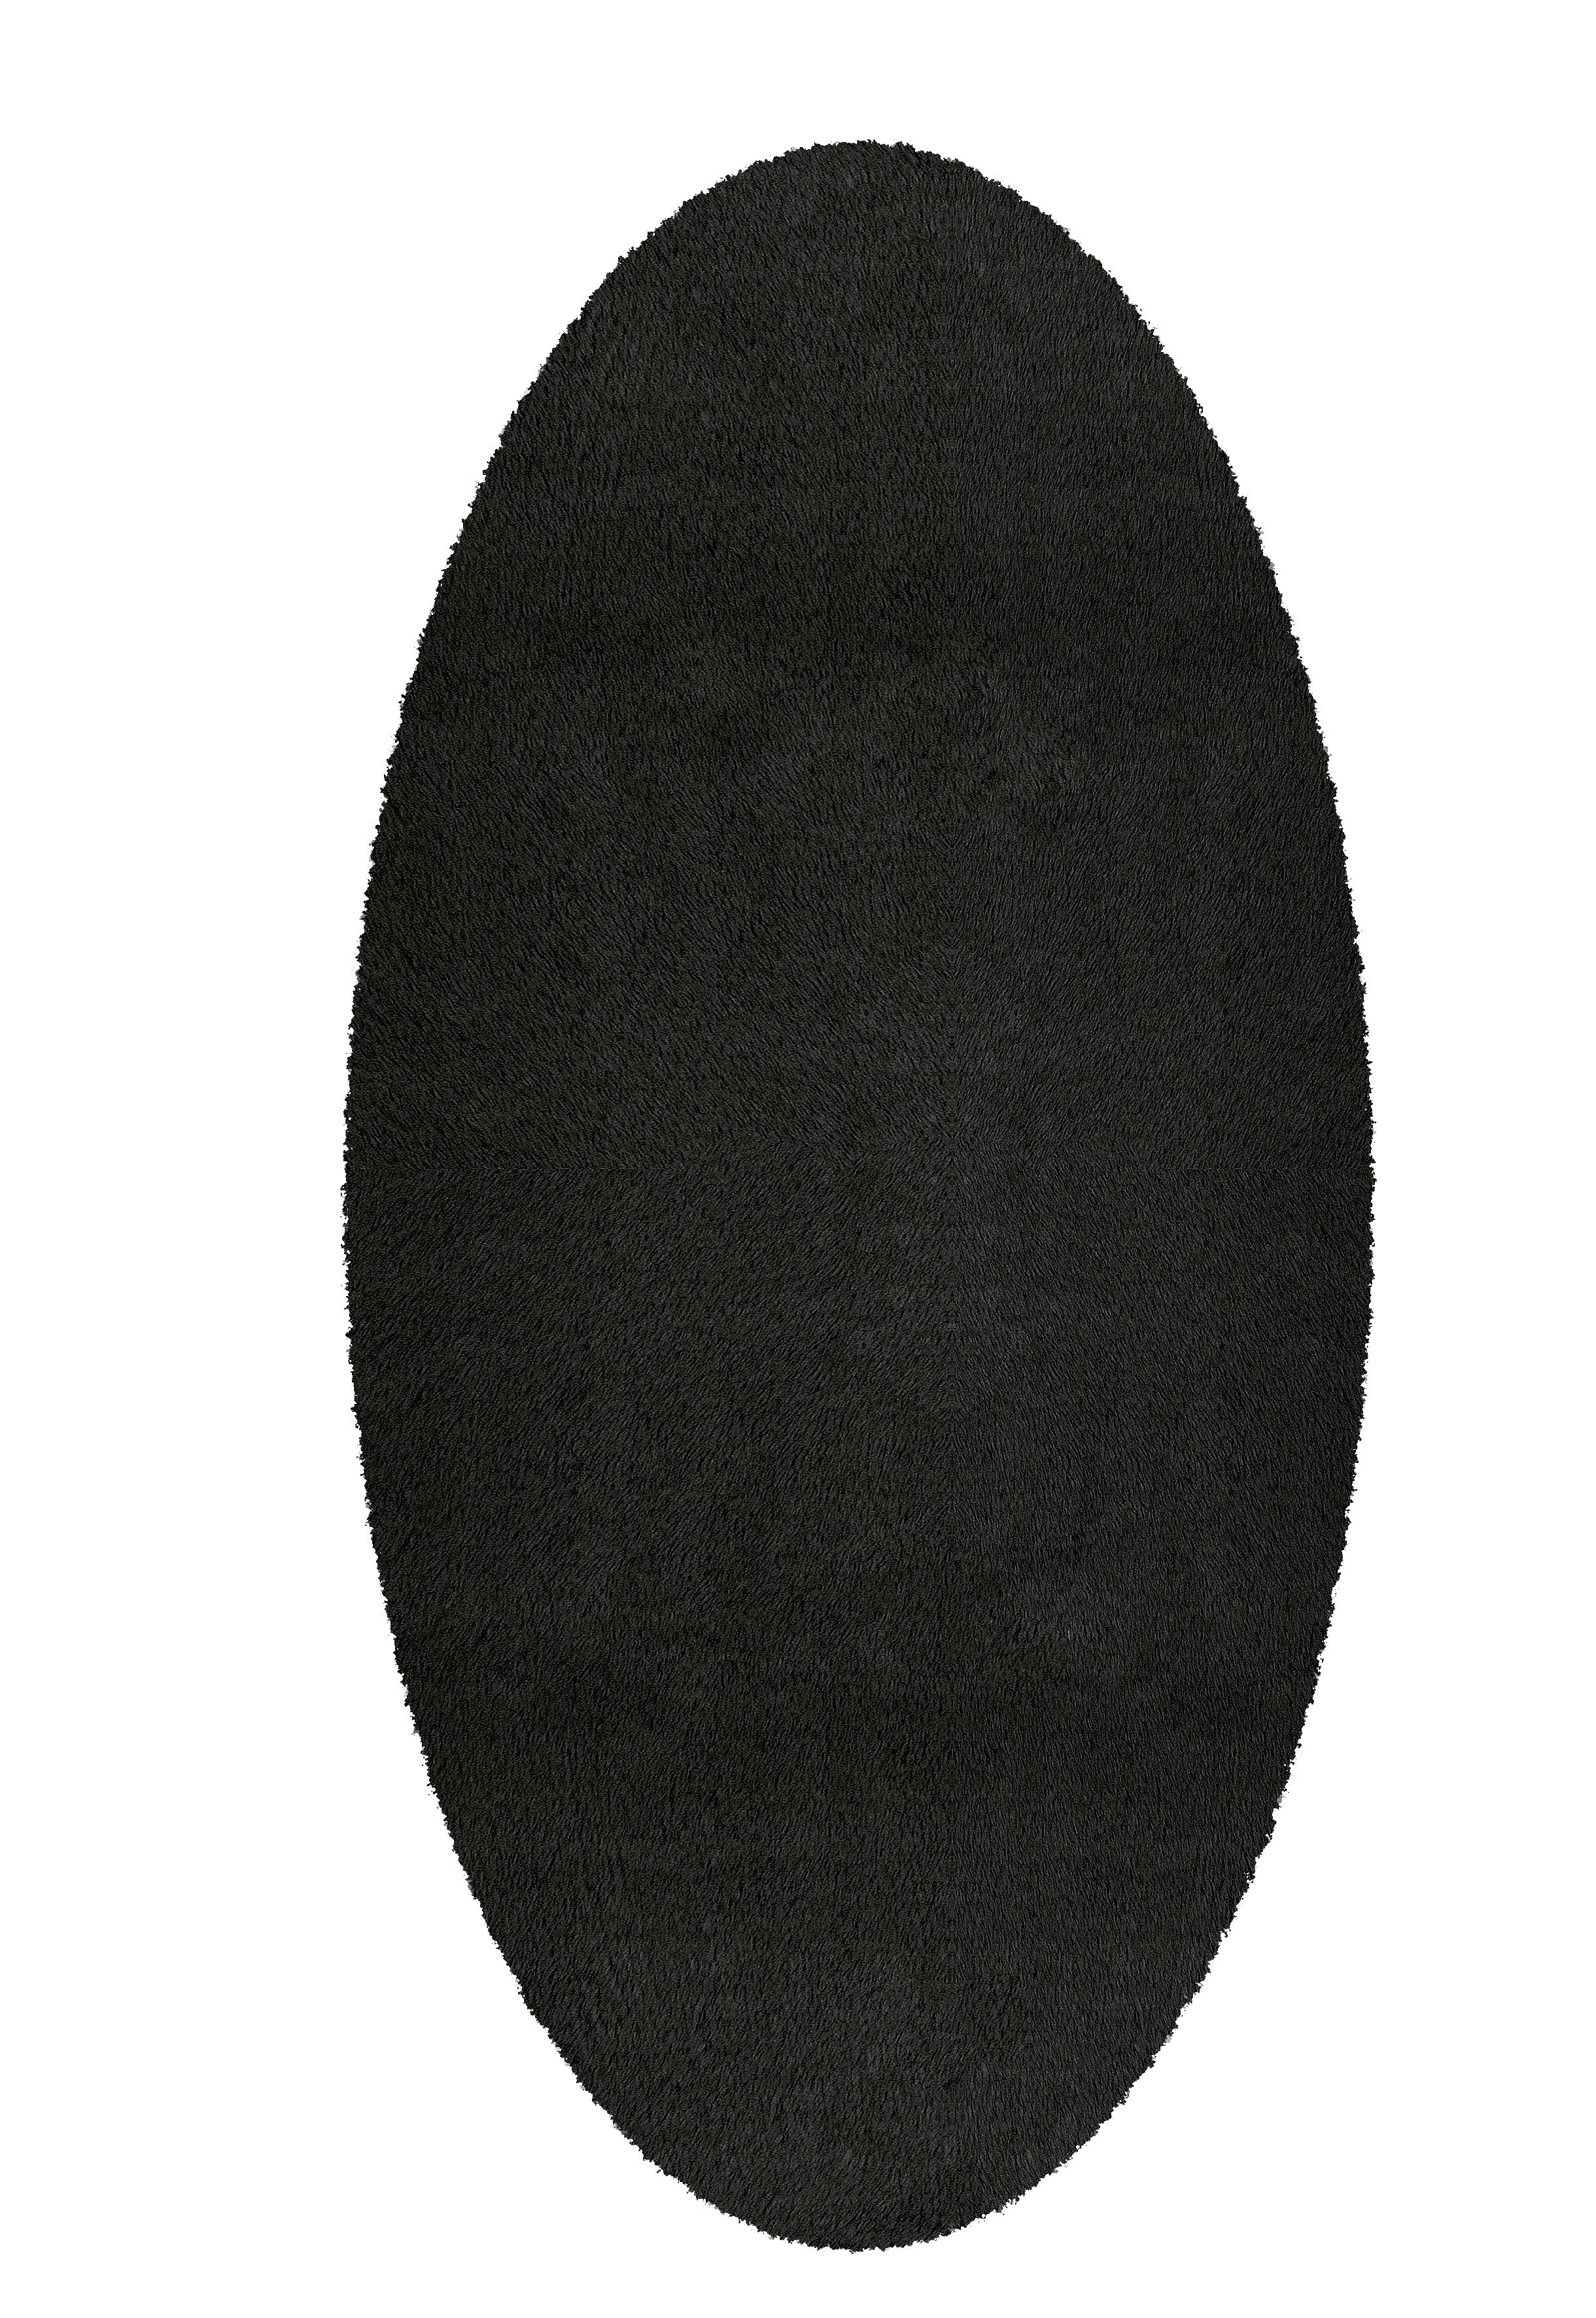 Badteppich Cony Oval, Schwarz, 60x110 cm